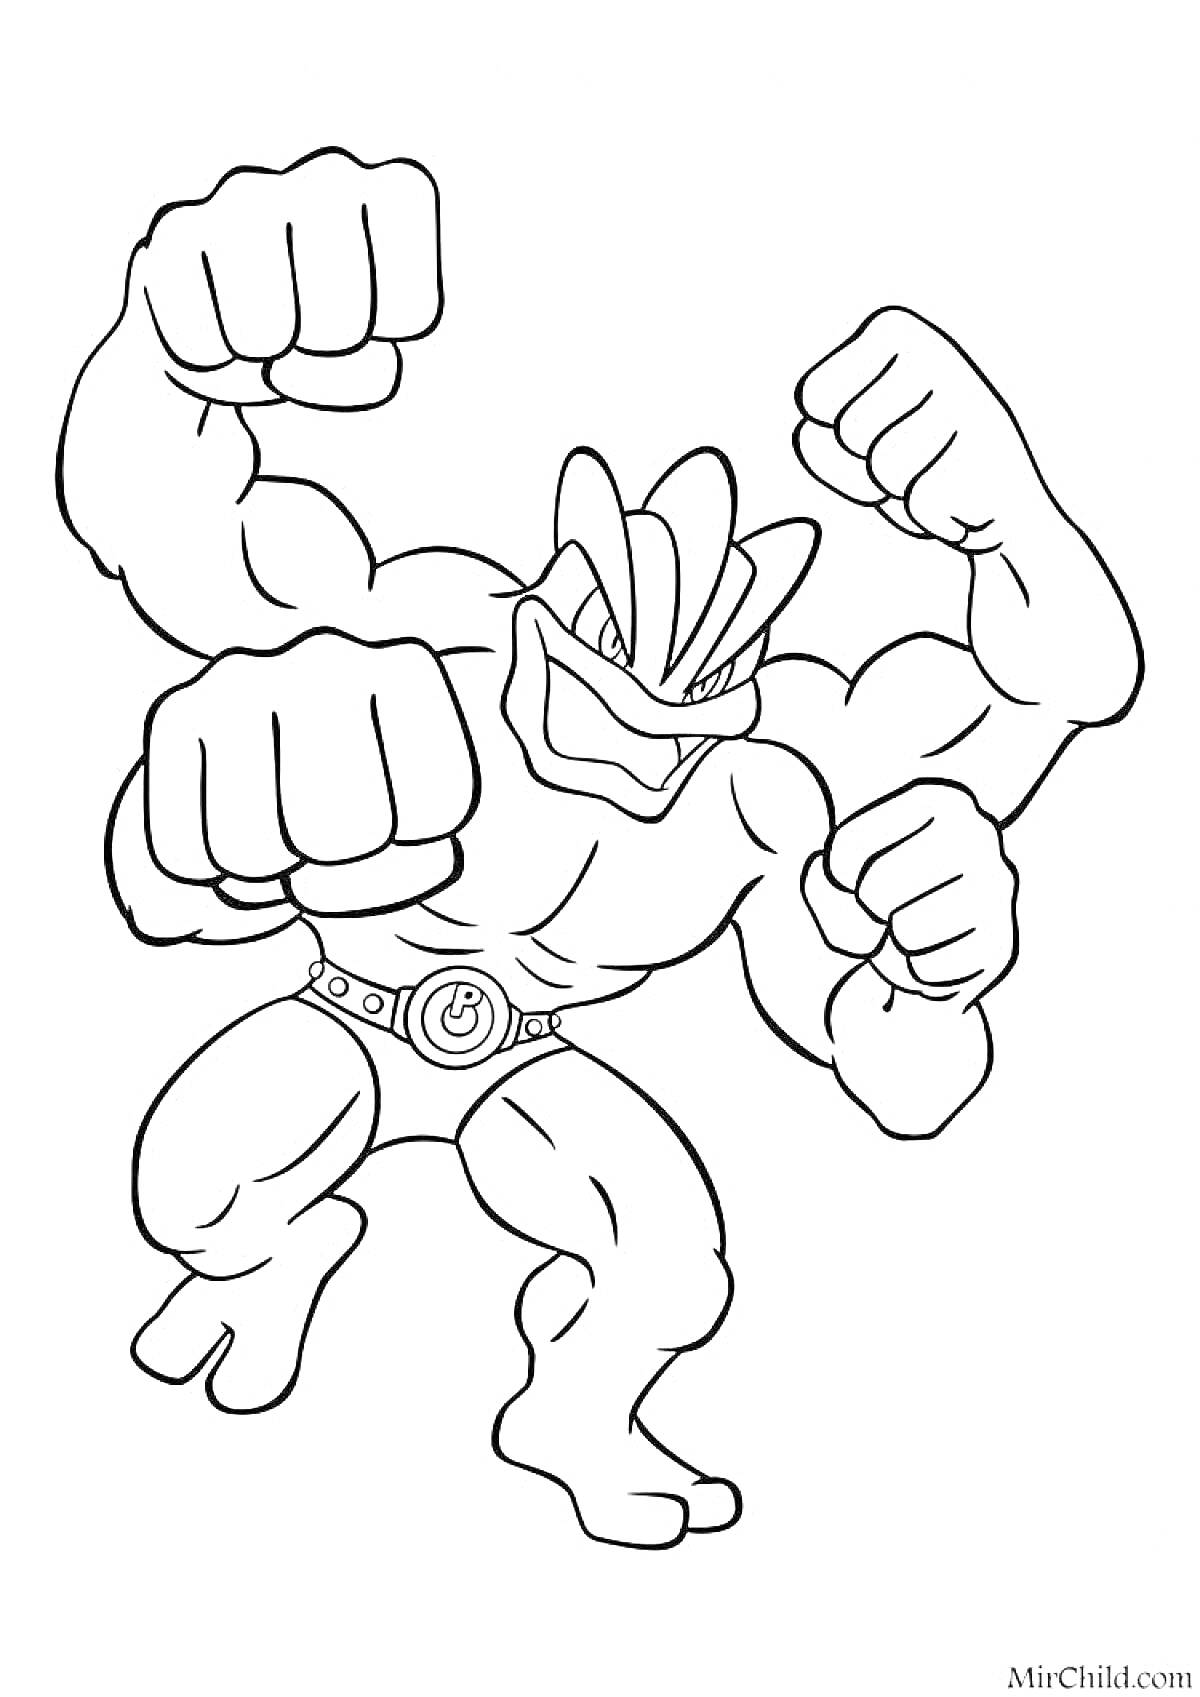 Раскраска Боец Гуджитсу с четырьмя руками и мускулистым телом, в боевой позе